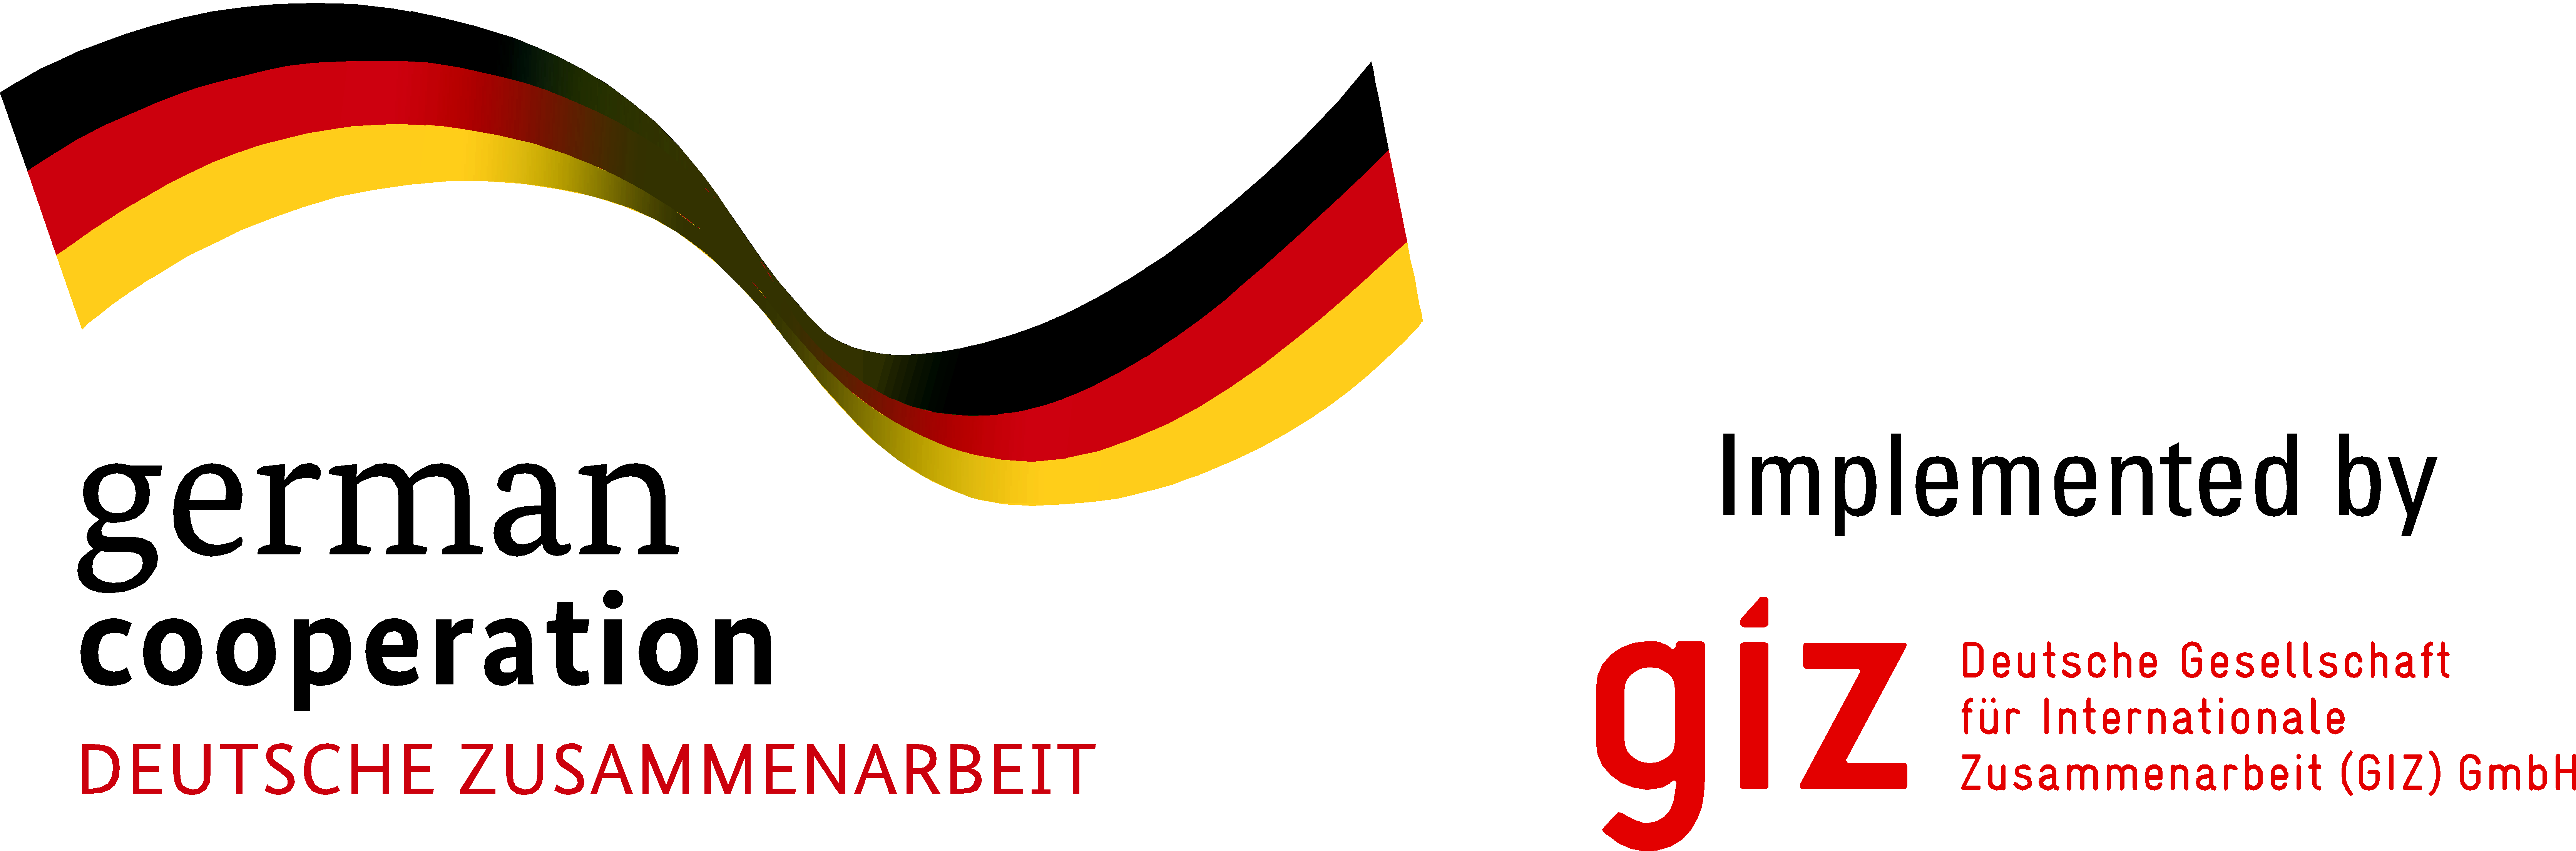 German cooperation GIZ